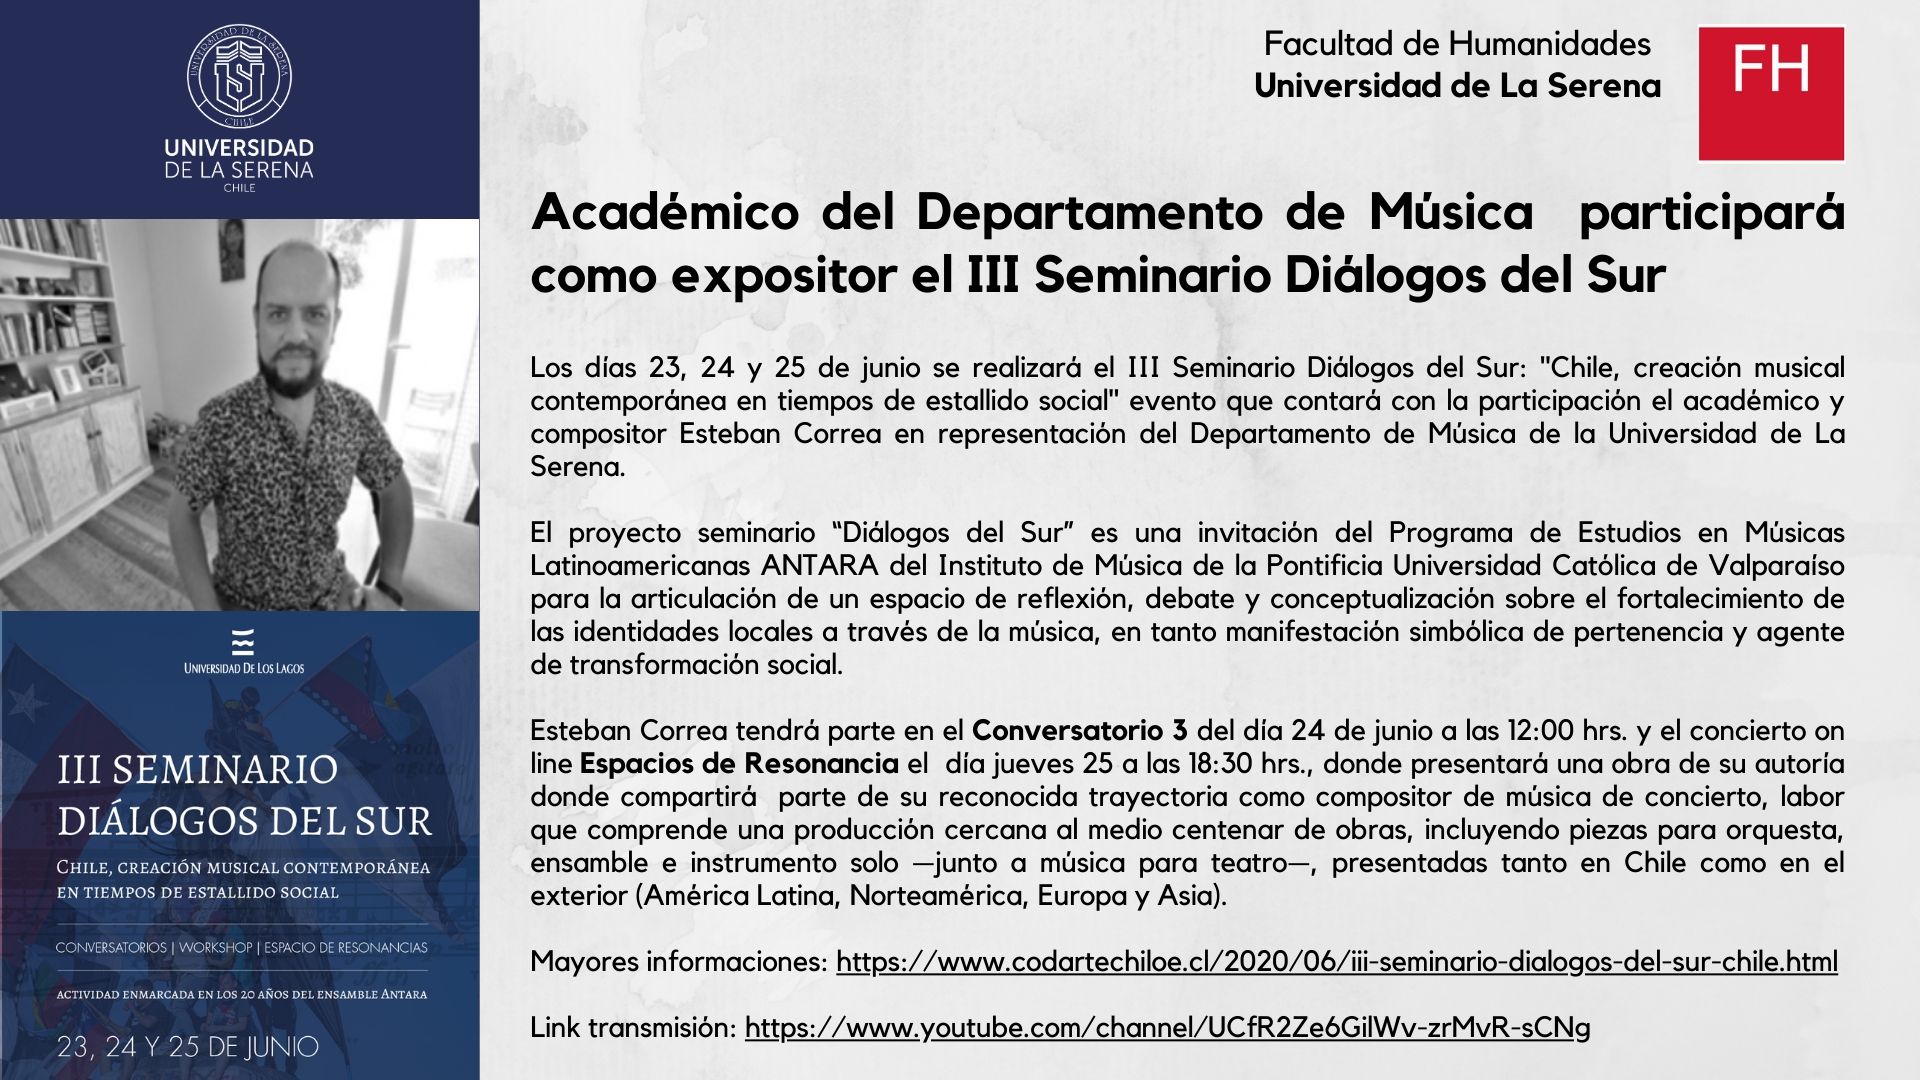 Académico del Departamento de Música participará como expositor el III Seminario Diálogos del Sur